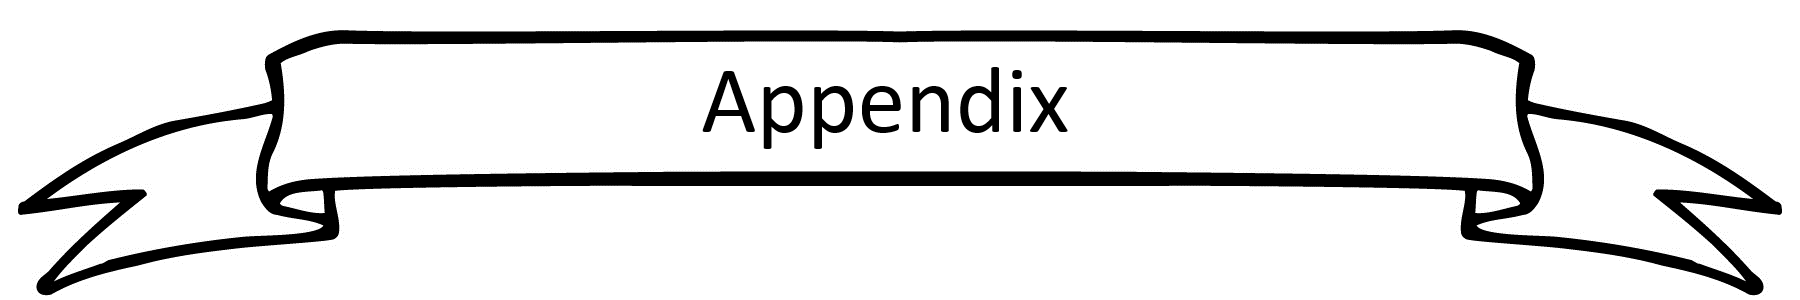 appendix heading